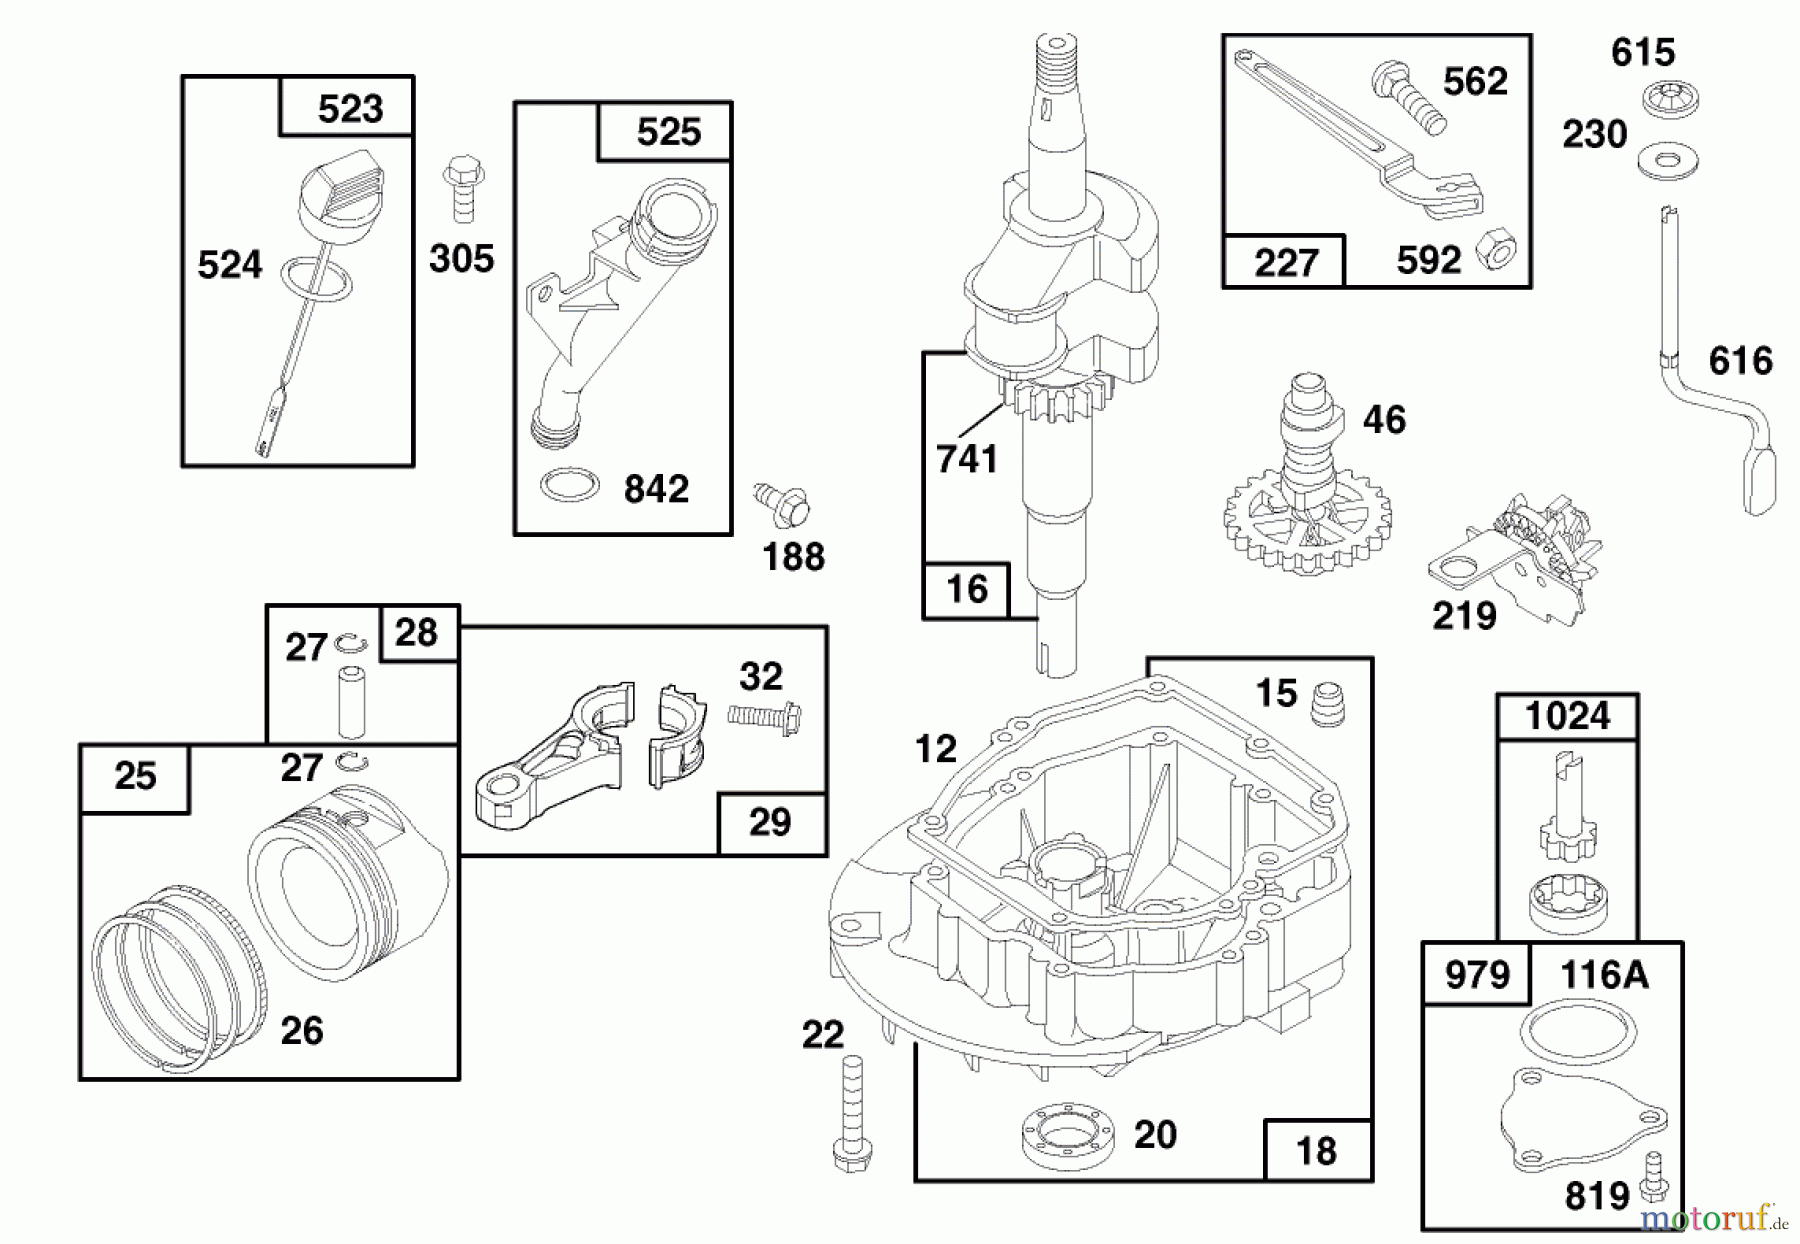  Toro Neu Mowers, Walk-Behind Seite 1 20465 - Toro Lawnmower, 1996 (6900001-6999999) ENGINE GTS 150 (MODEL NO. 20465 ONLY) #2